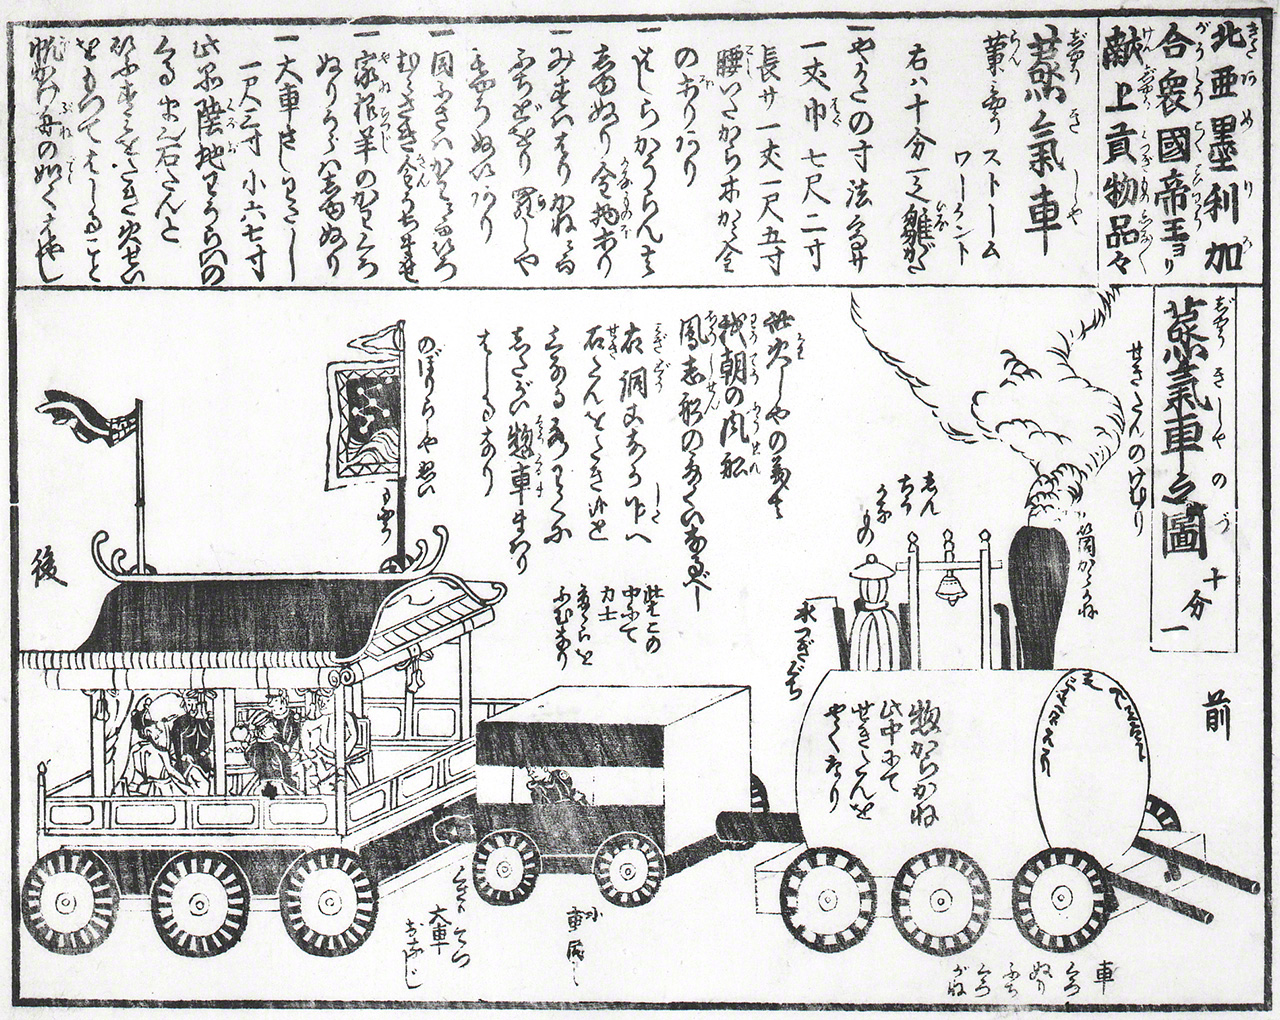 Journal parlant de la locomotive offerte. (Avec l'aimable autorisation des Archives d'histoire de Yokohama)